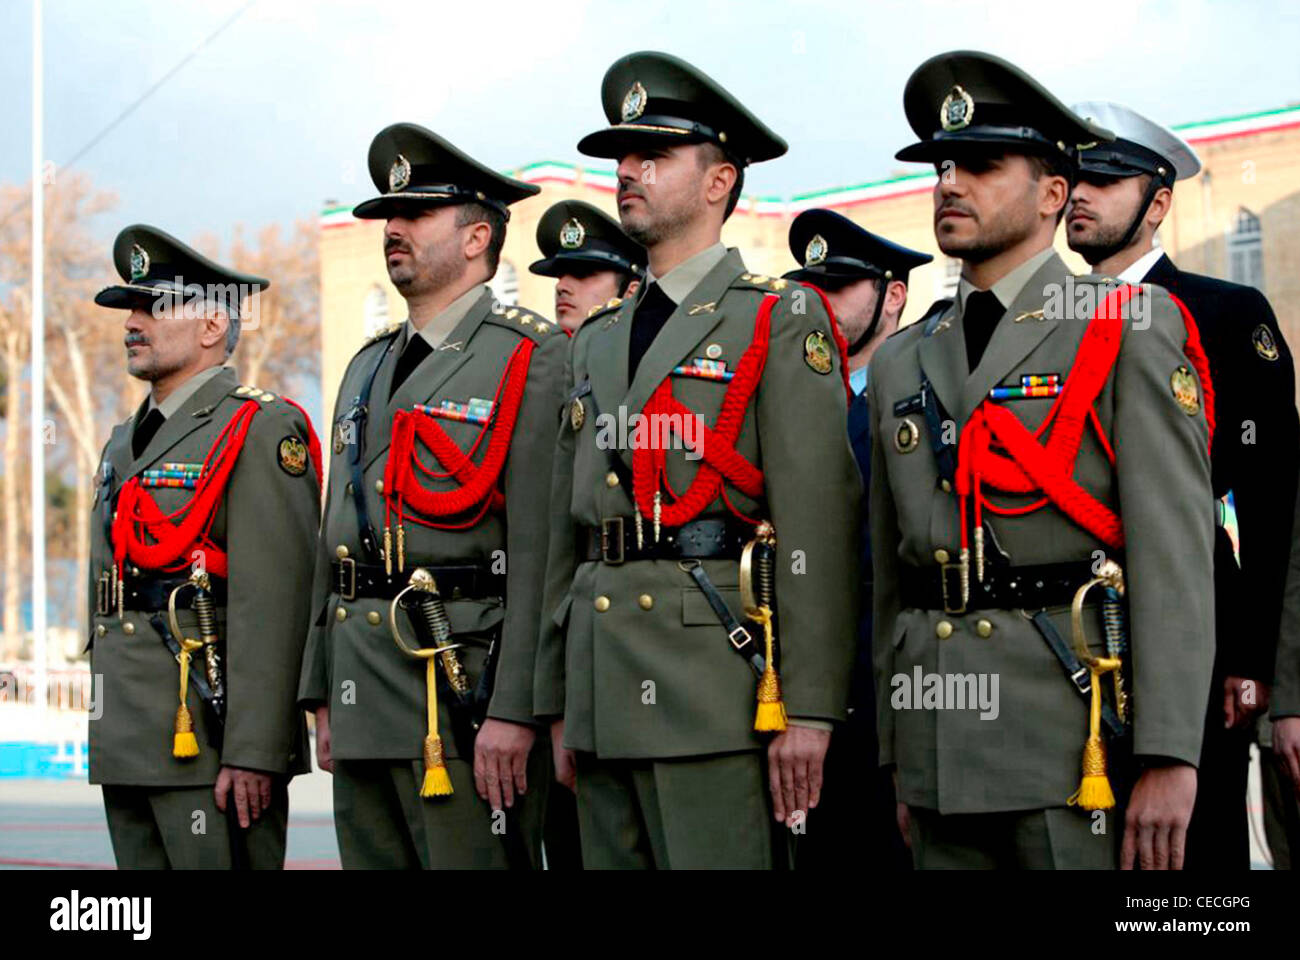 Officiers et soldats de l'armée iranienne au cours d'un défilé à Téhéran. Banque D'Images